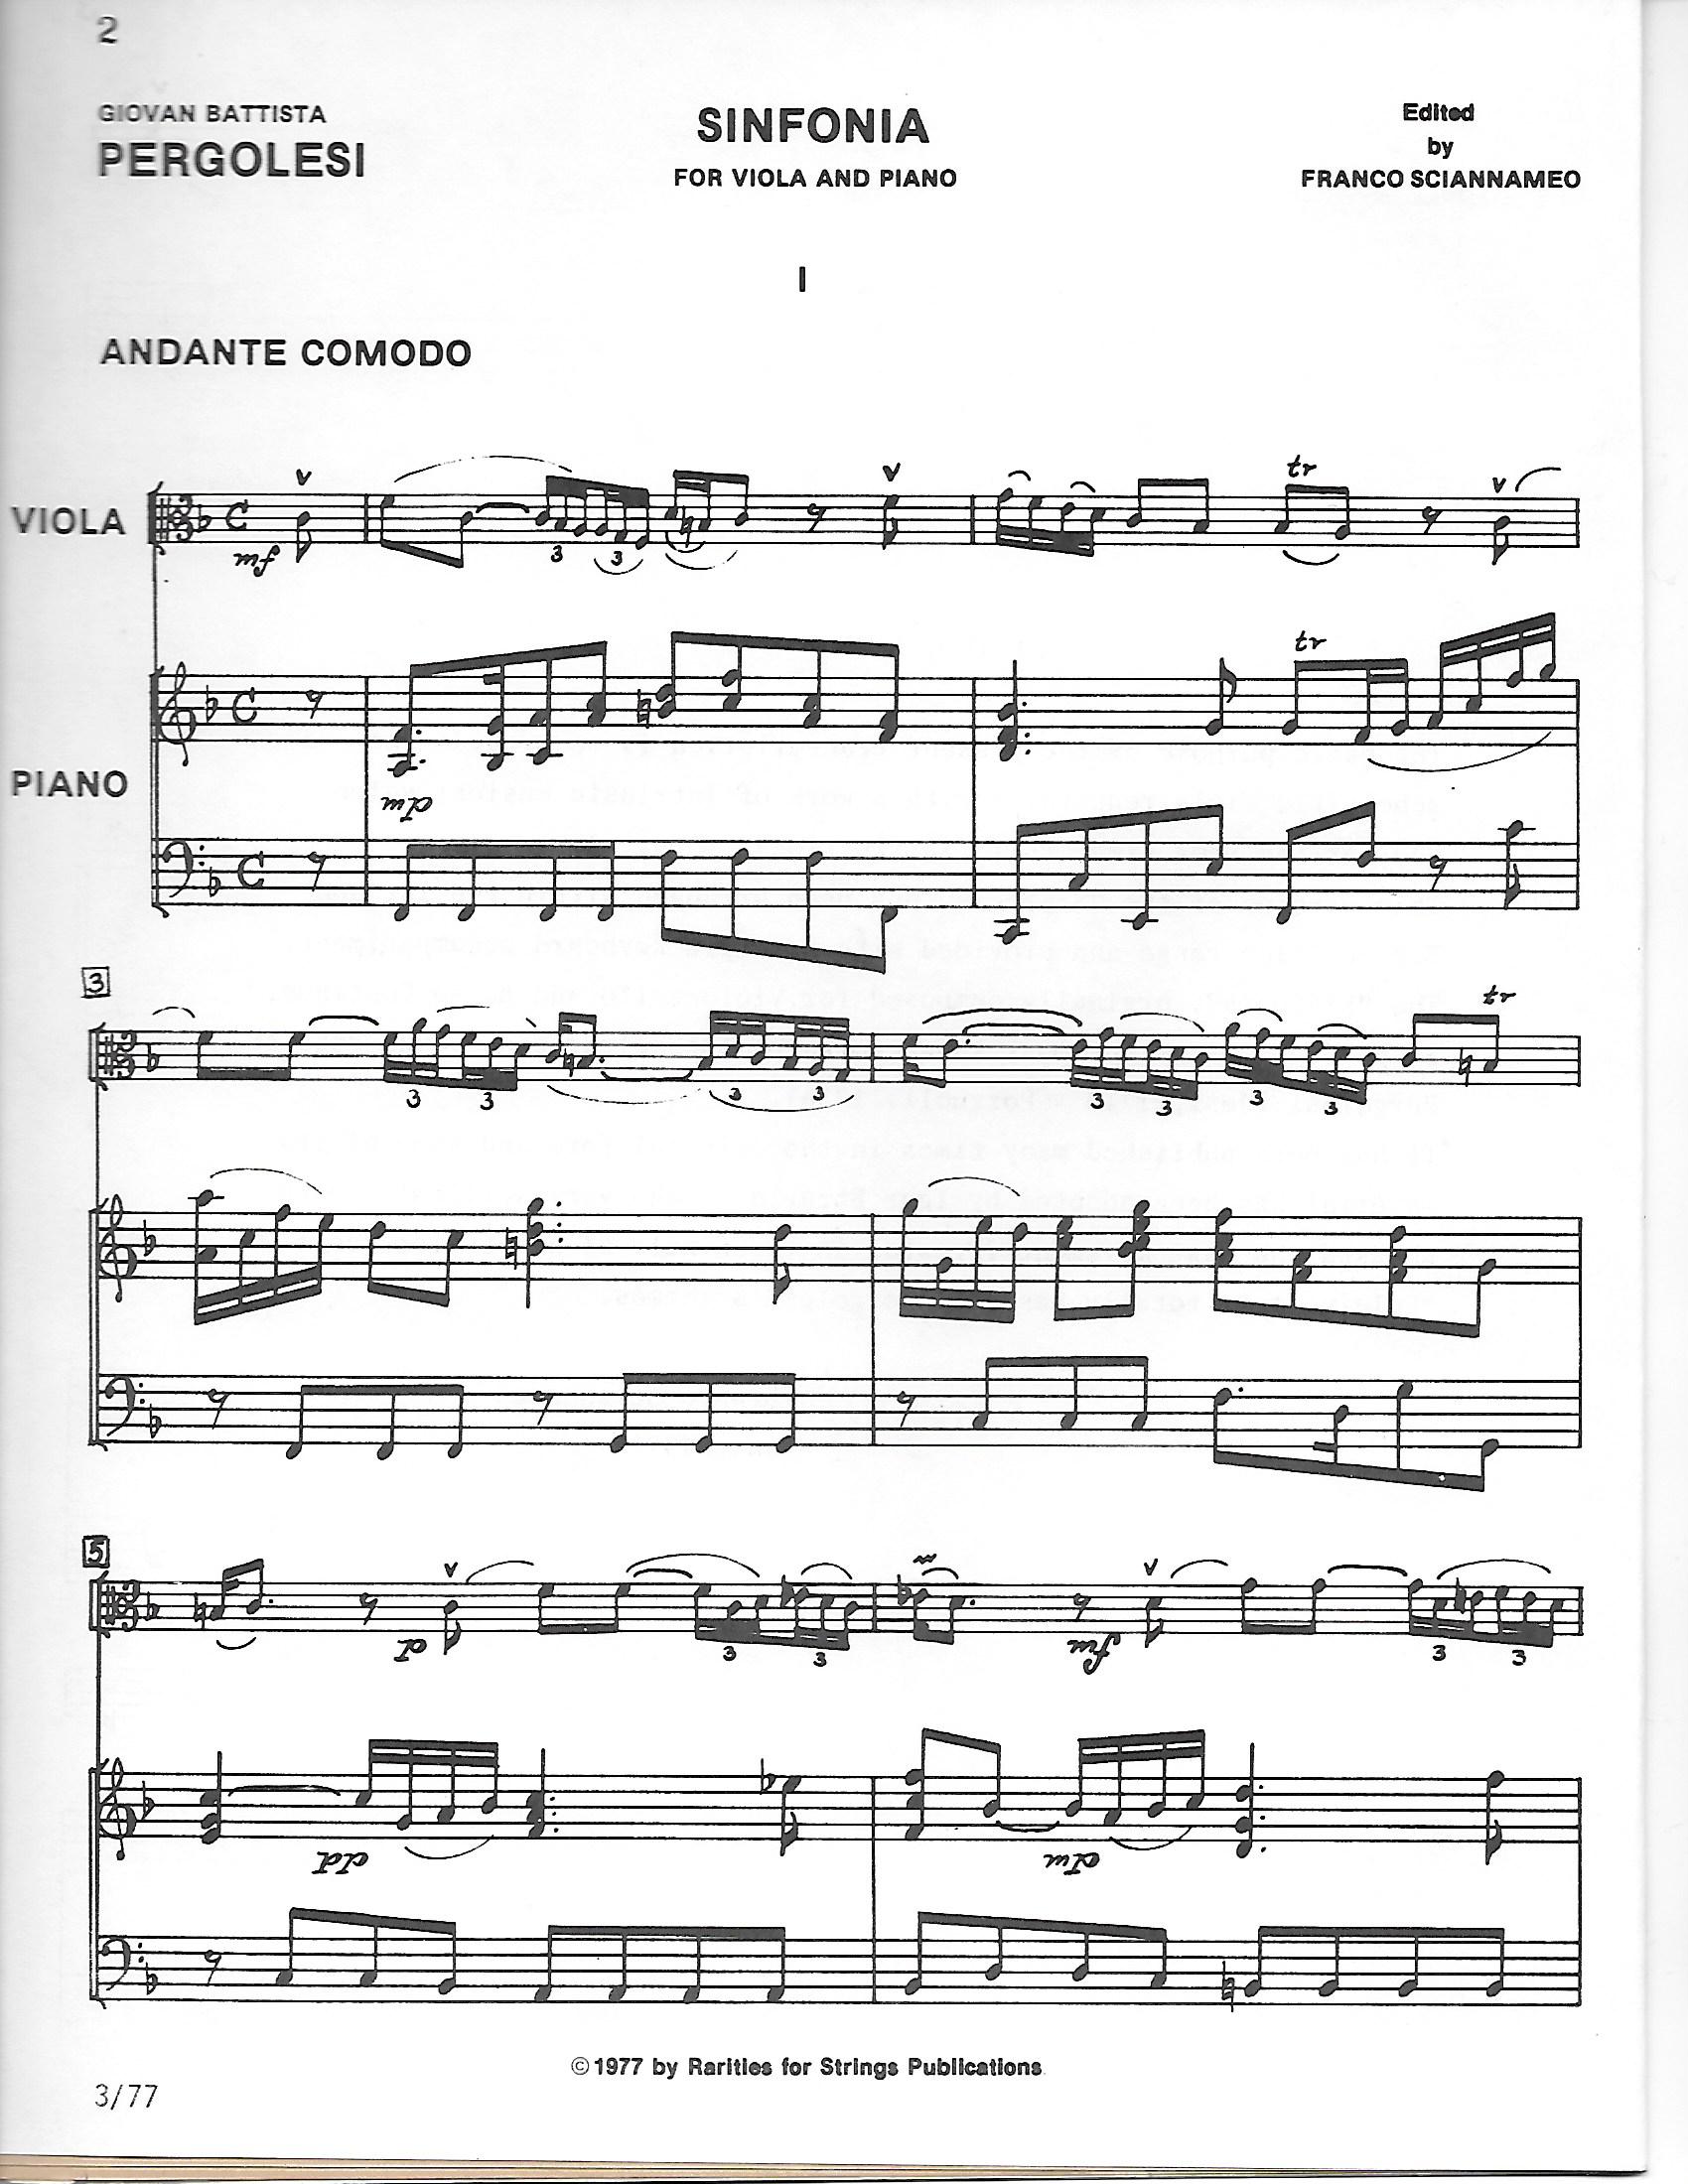 Pergolesi, G. B. - Sinfonia for Viola and Piano - Music